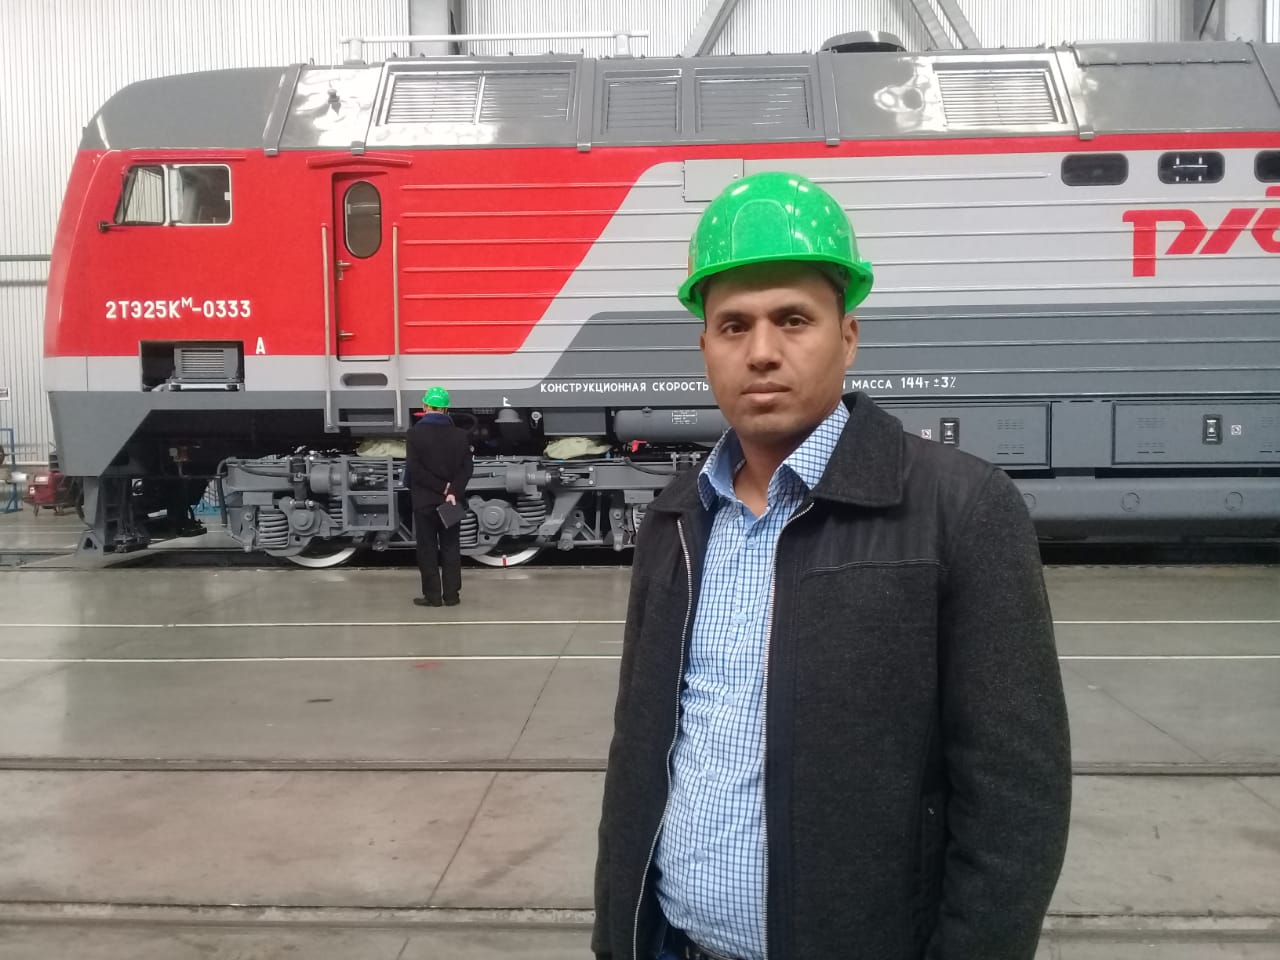  جولة لليوم السابع بمصنع جرارات السكة الحديد الروسى (1)